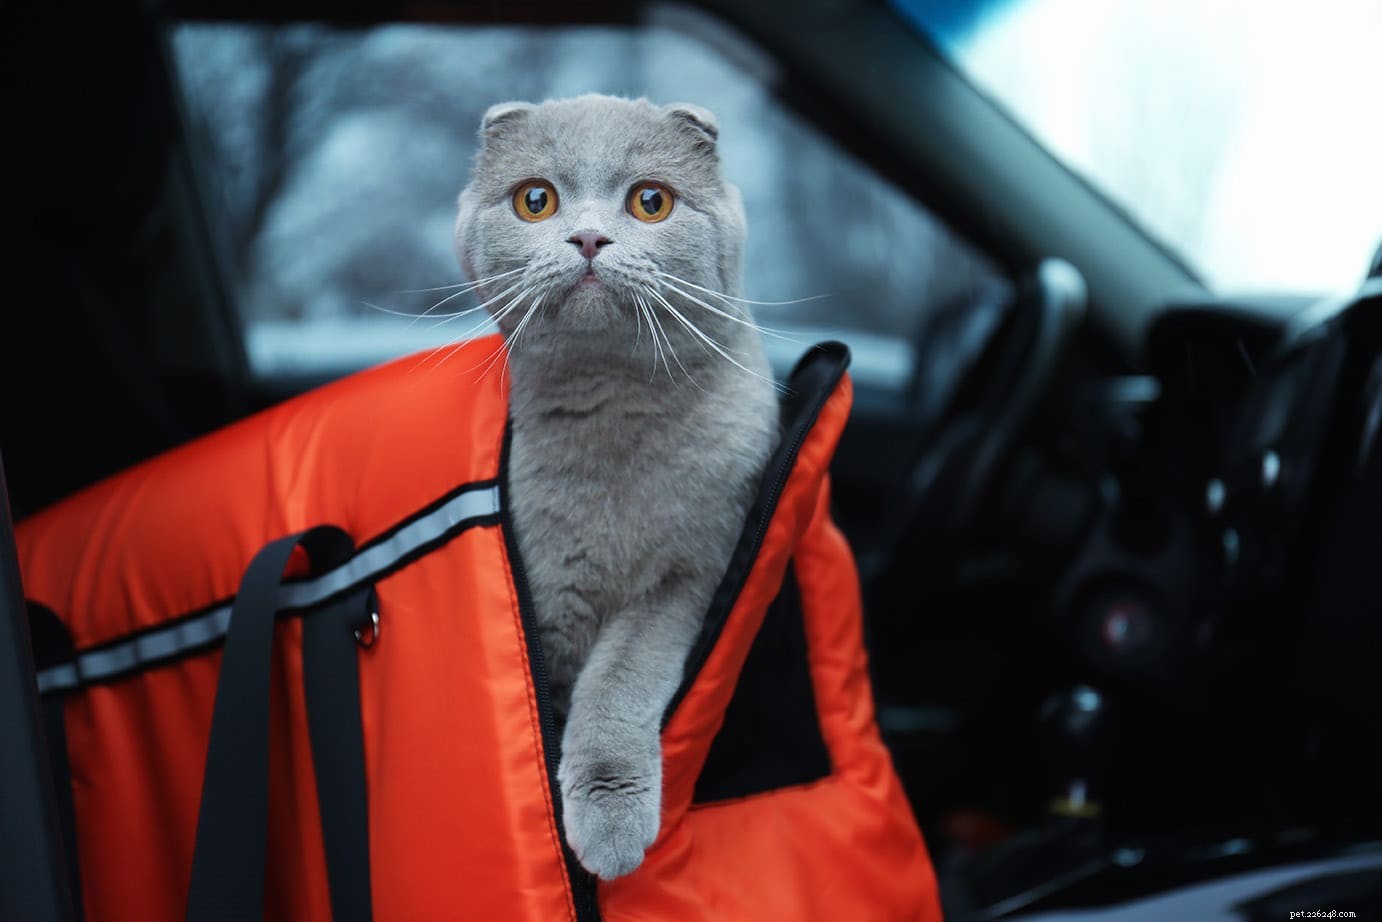 Comment calmer un chat dans la voiture (8 méthodes éprouvées)